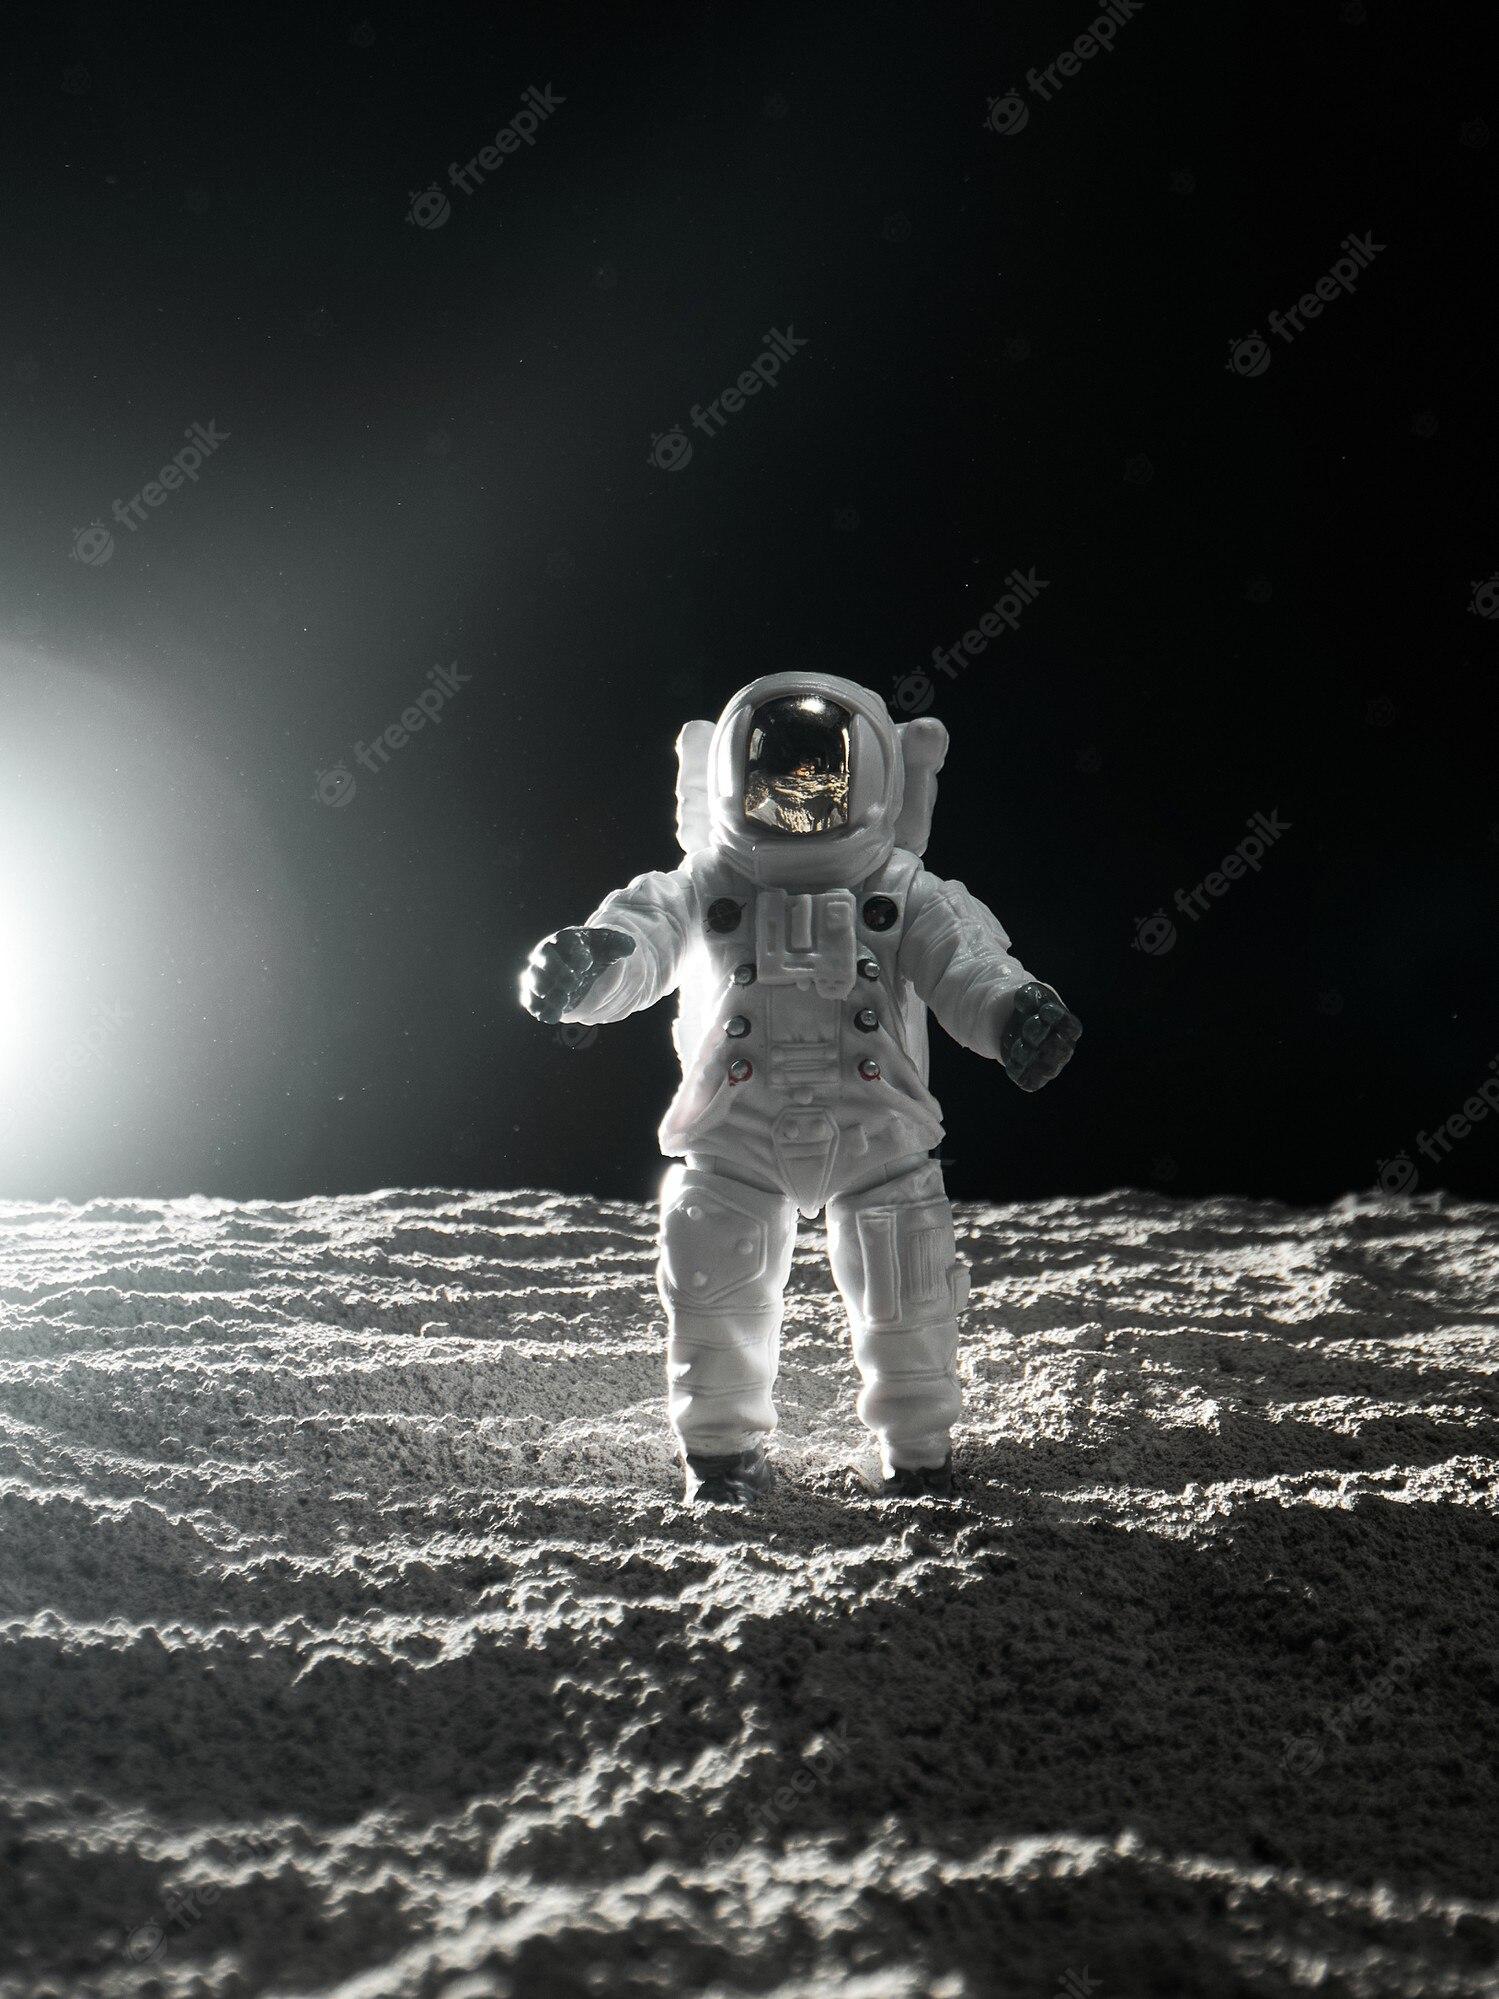 Premium Photo Astronaut at spacewalk cosmic art science